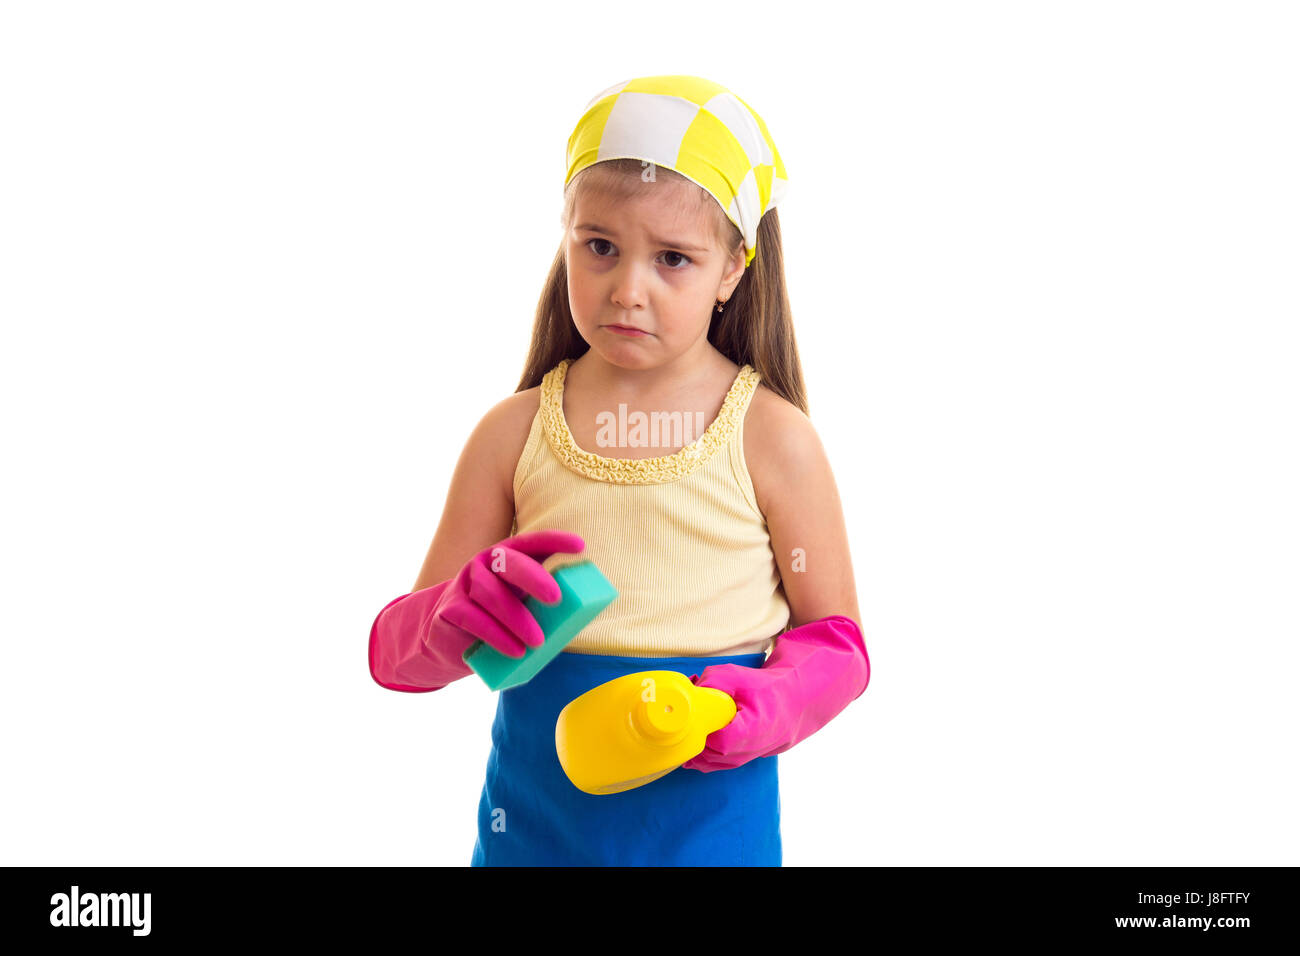 Triste petite fille avec de longs cheveux châtains en chemise jaune et bleu avec des gants et tablier rose jaune foulard vert et jaune éponge holding sur bouteille Banque D'Images